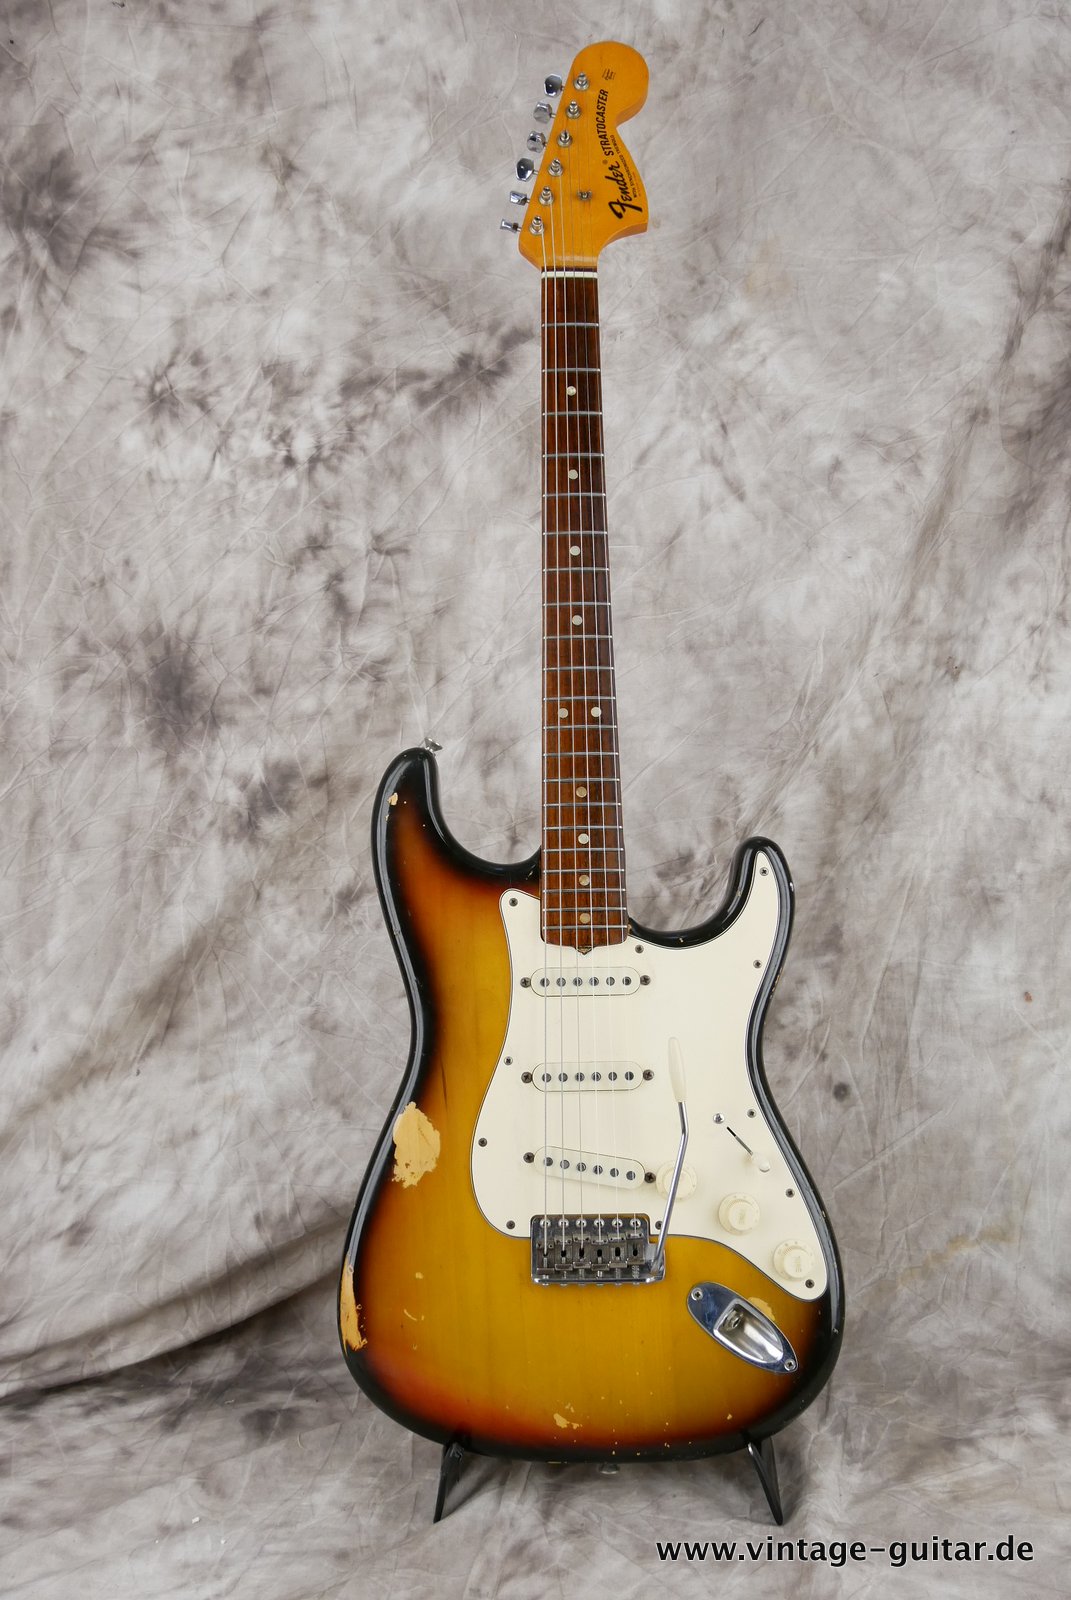 Fender-Stratocaster-1972-sunburst-4-hole-001.JPG